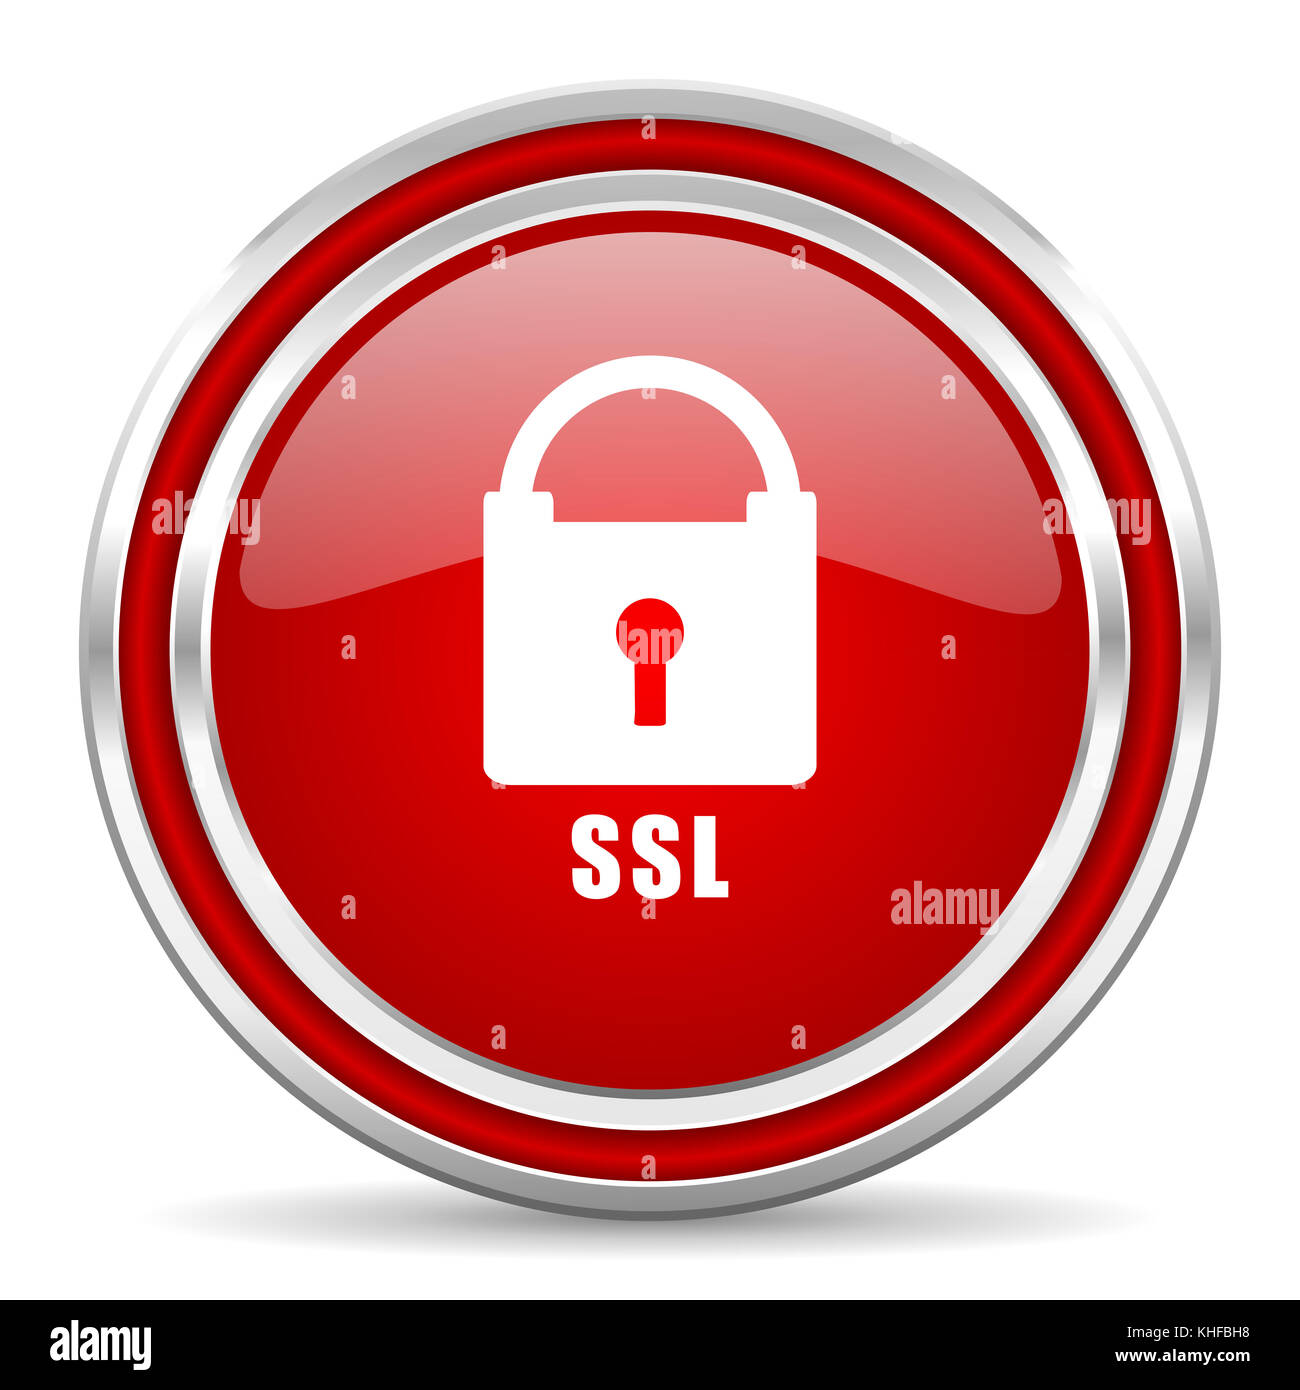 CSL rouge argent métallisé bordure de chrome Web et icône de téléphone portable sur fond blanc avec ombre Banque D'Images